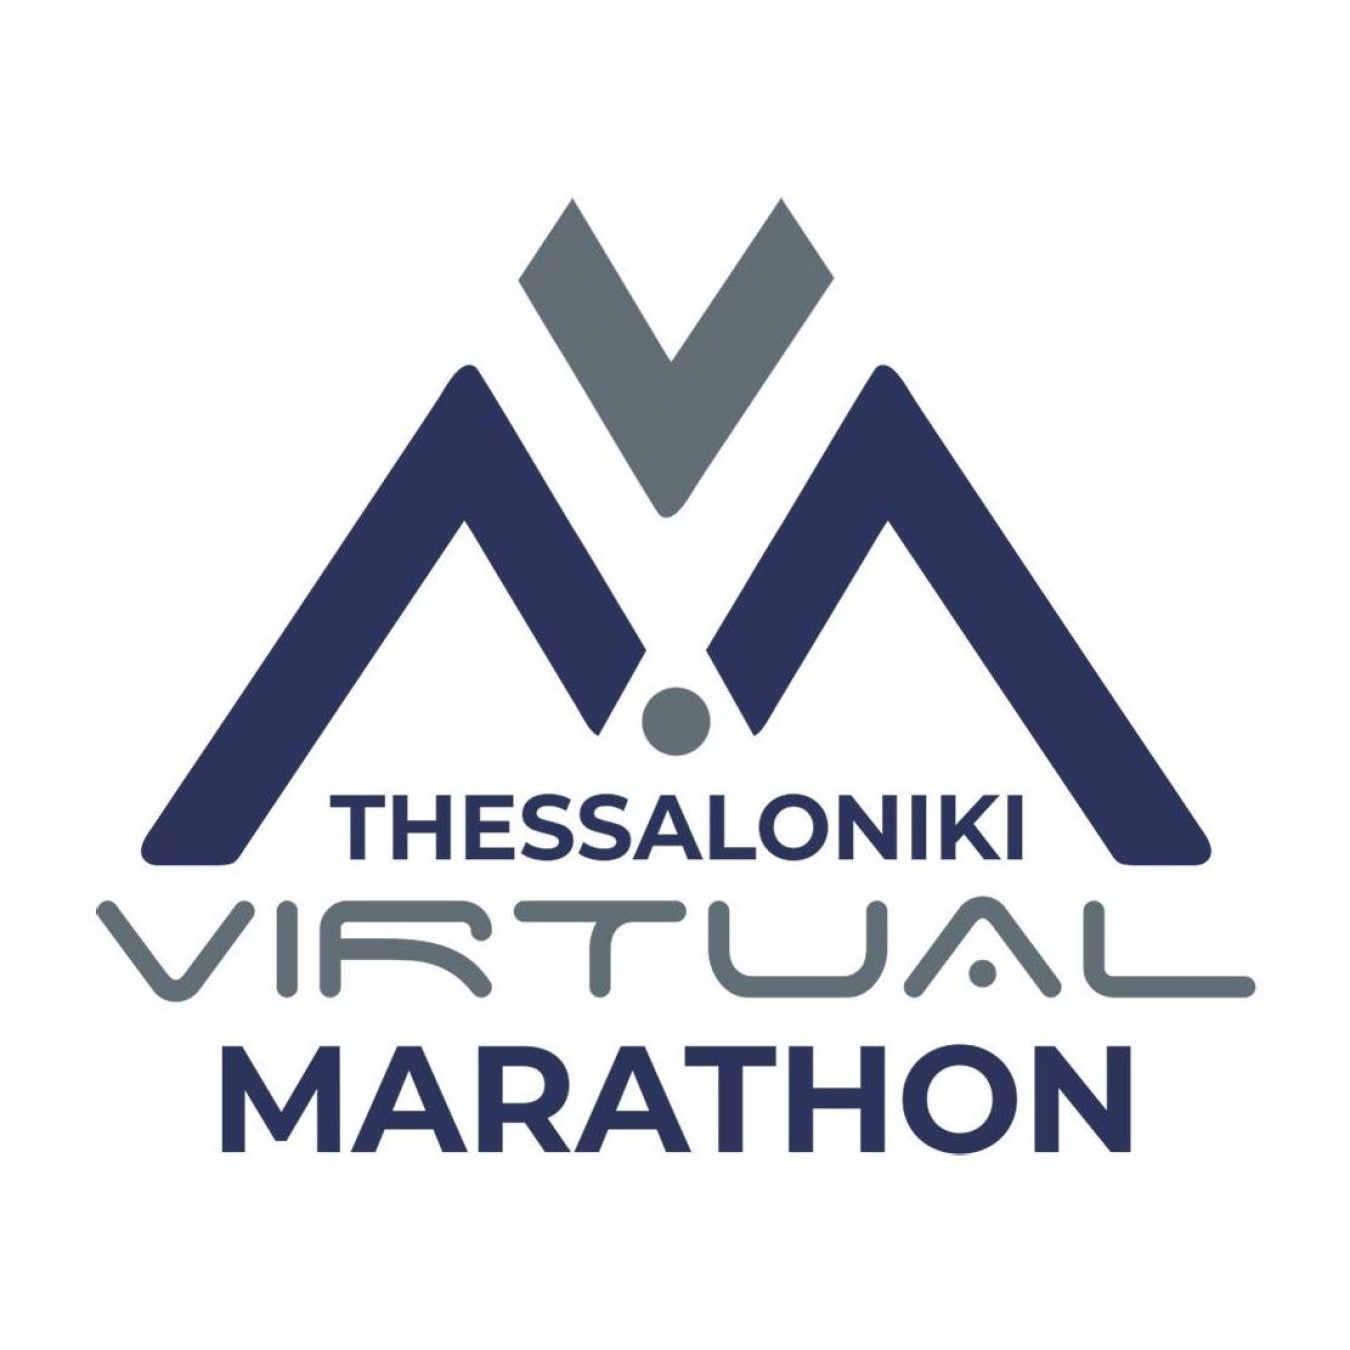 Thessaloniki Virtual Marathon